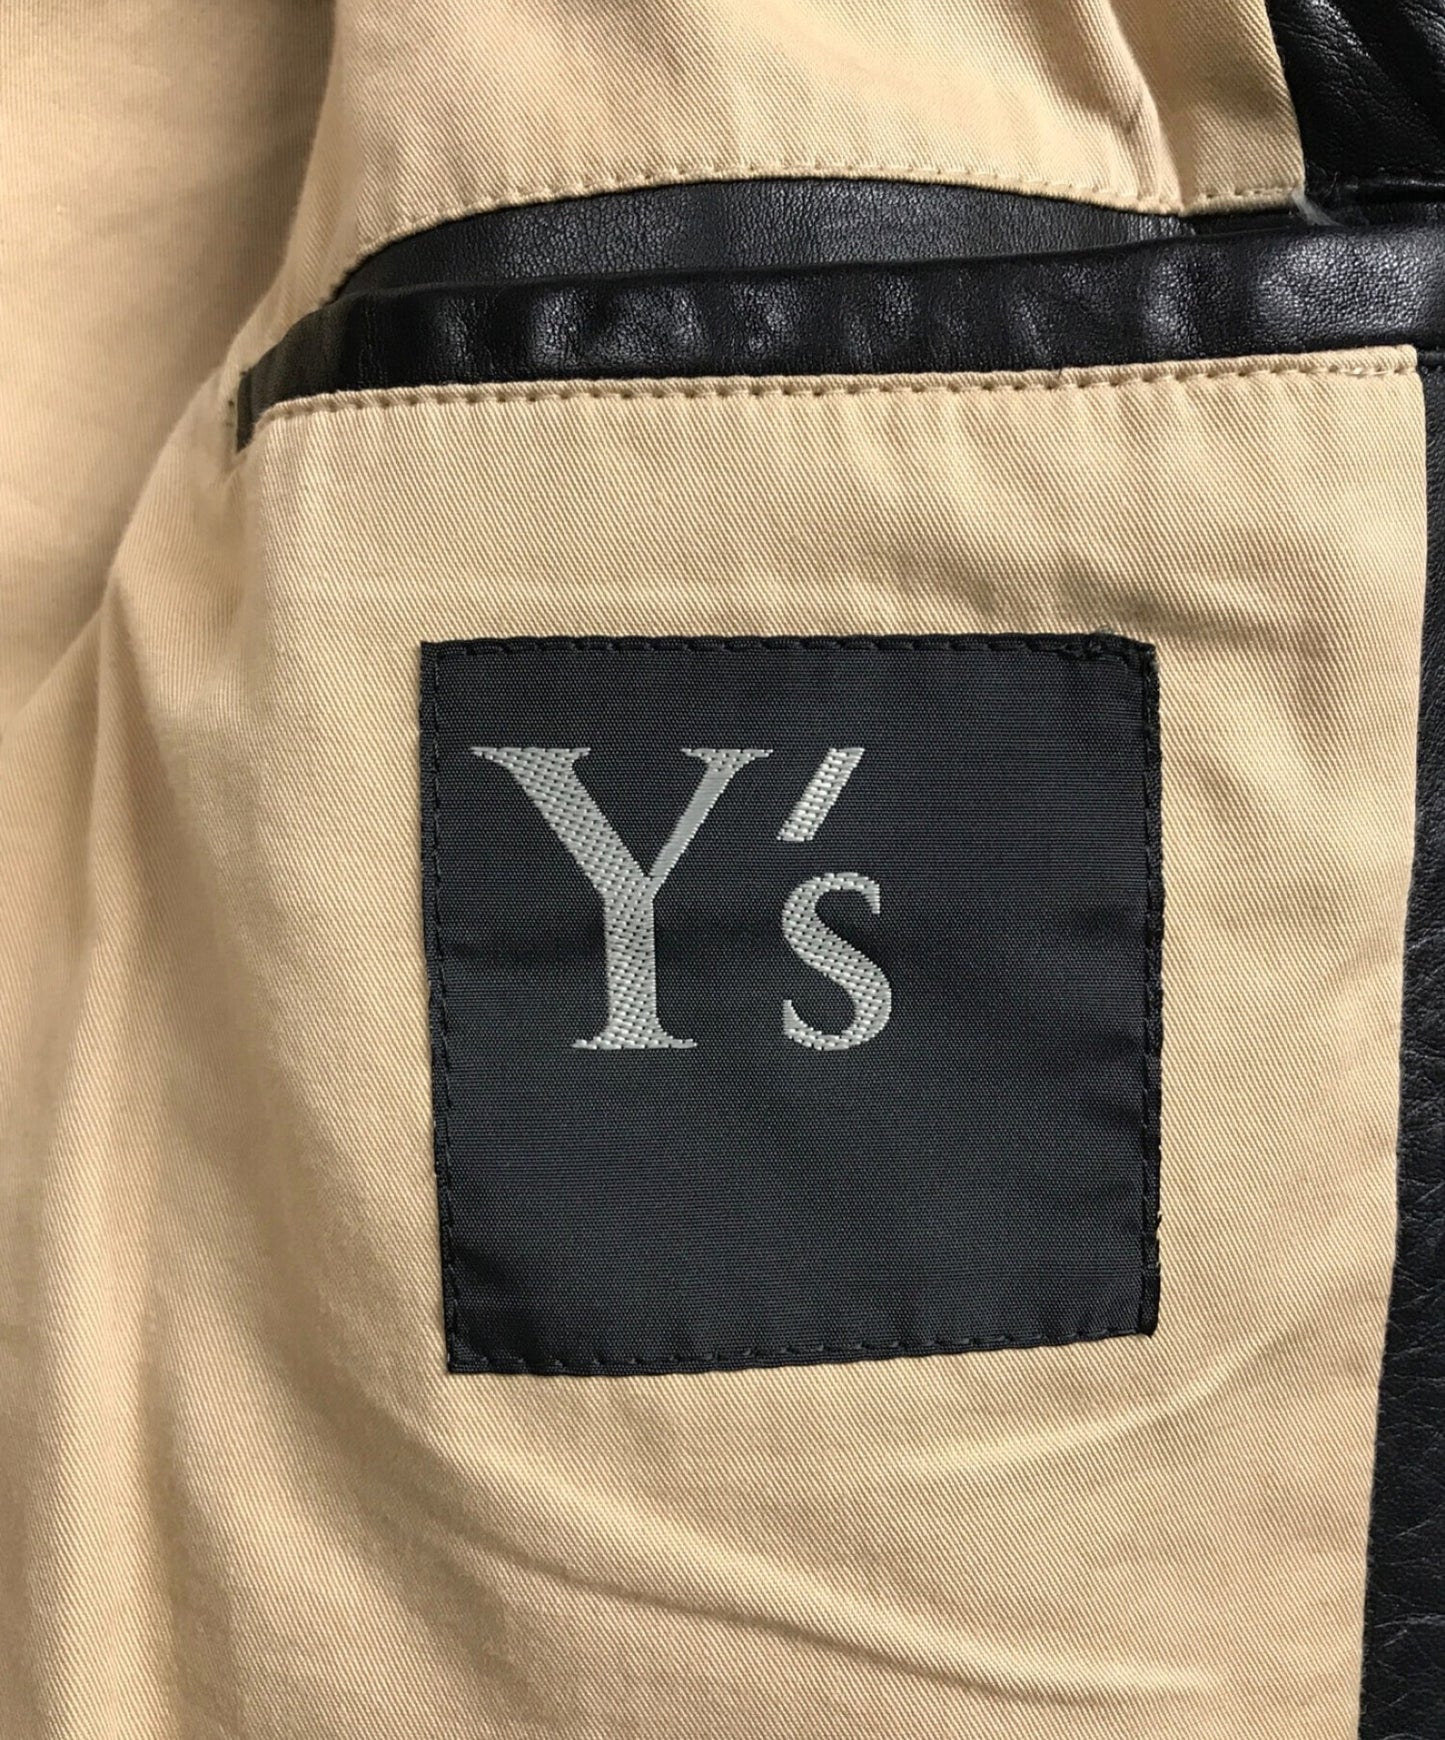 y's for men jacket me-y07-700